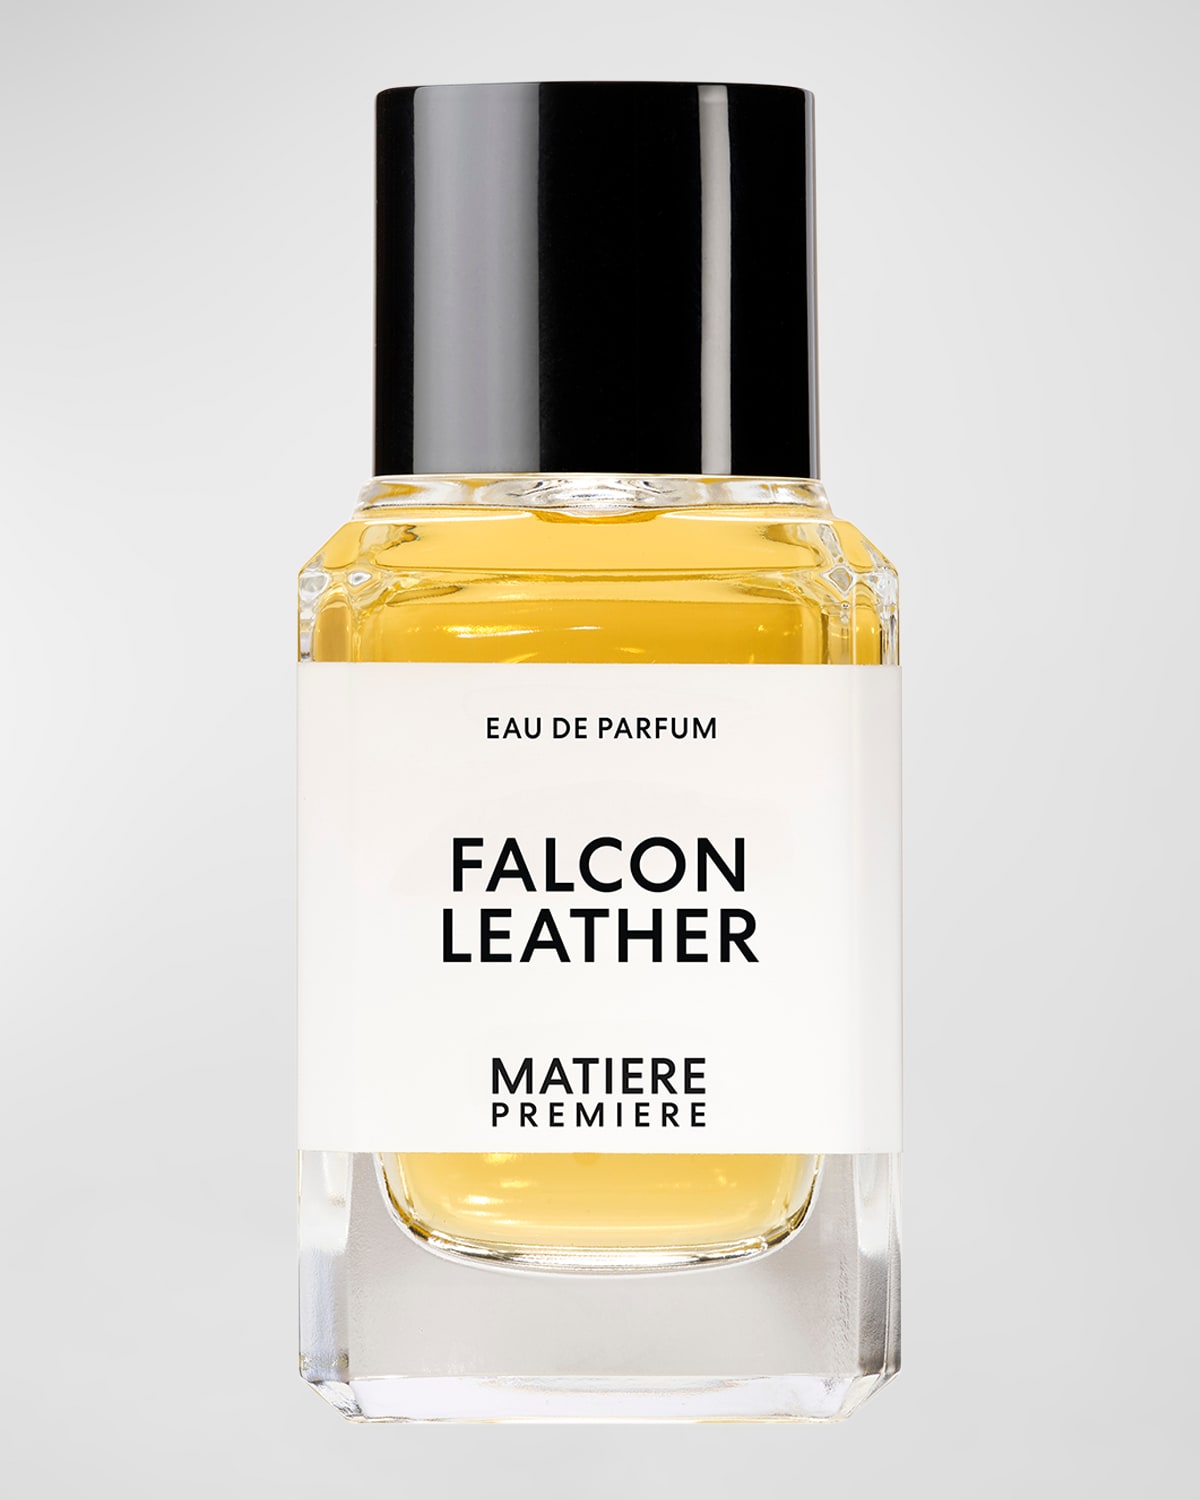 Falcon Leather Eau de Parfum, 1.7 oz.